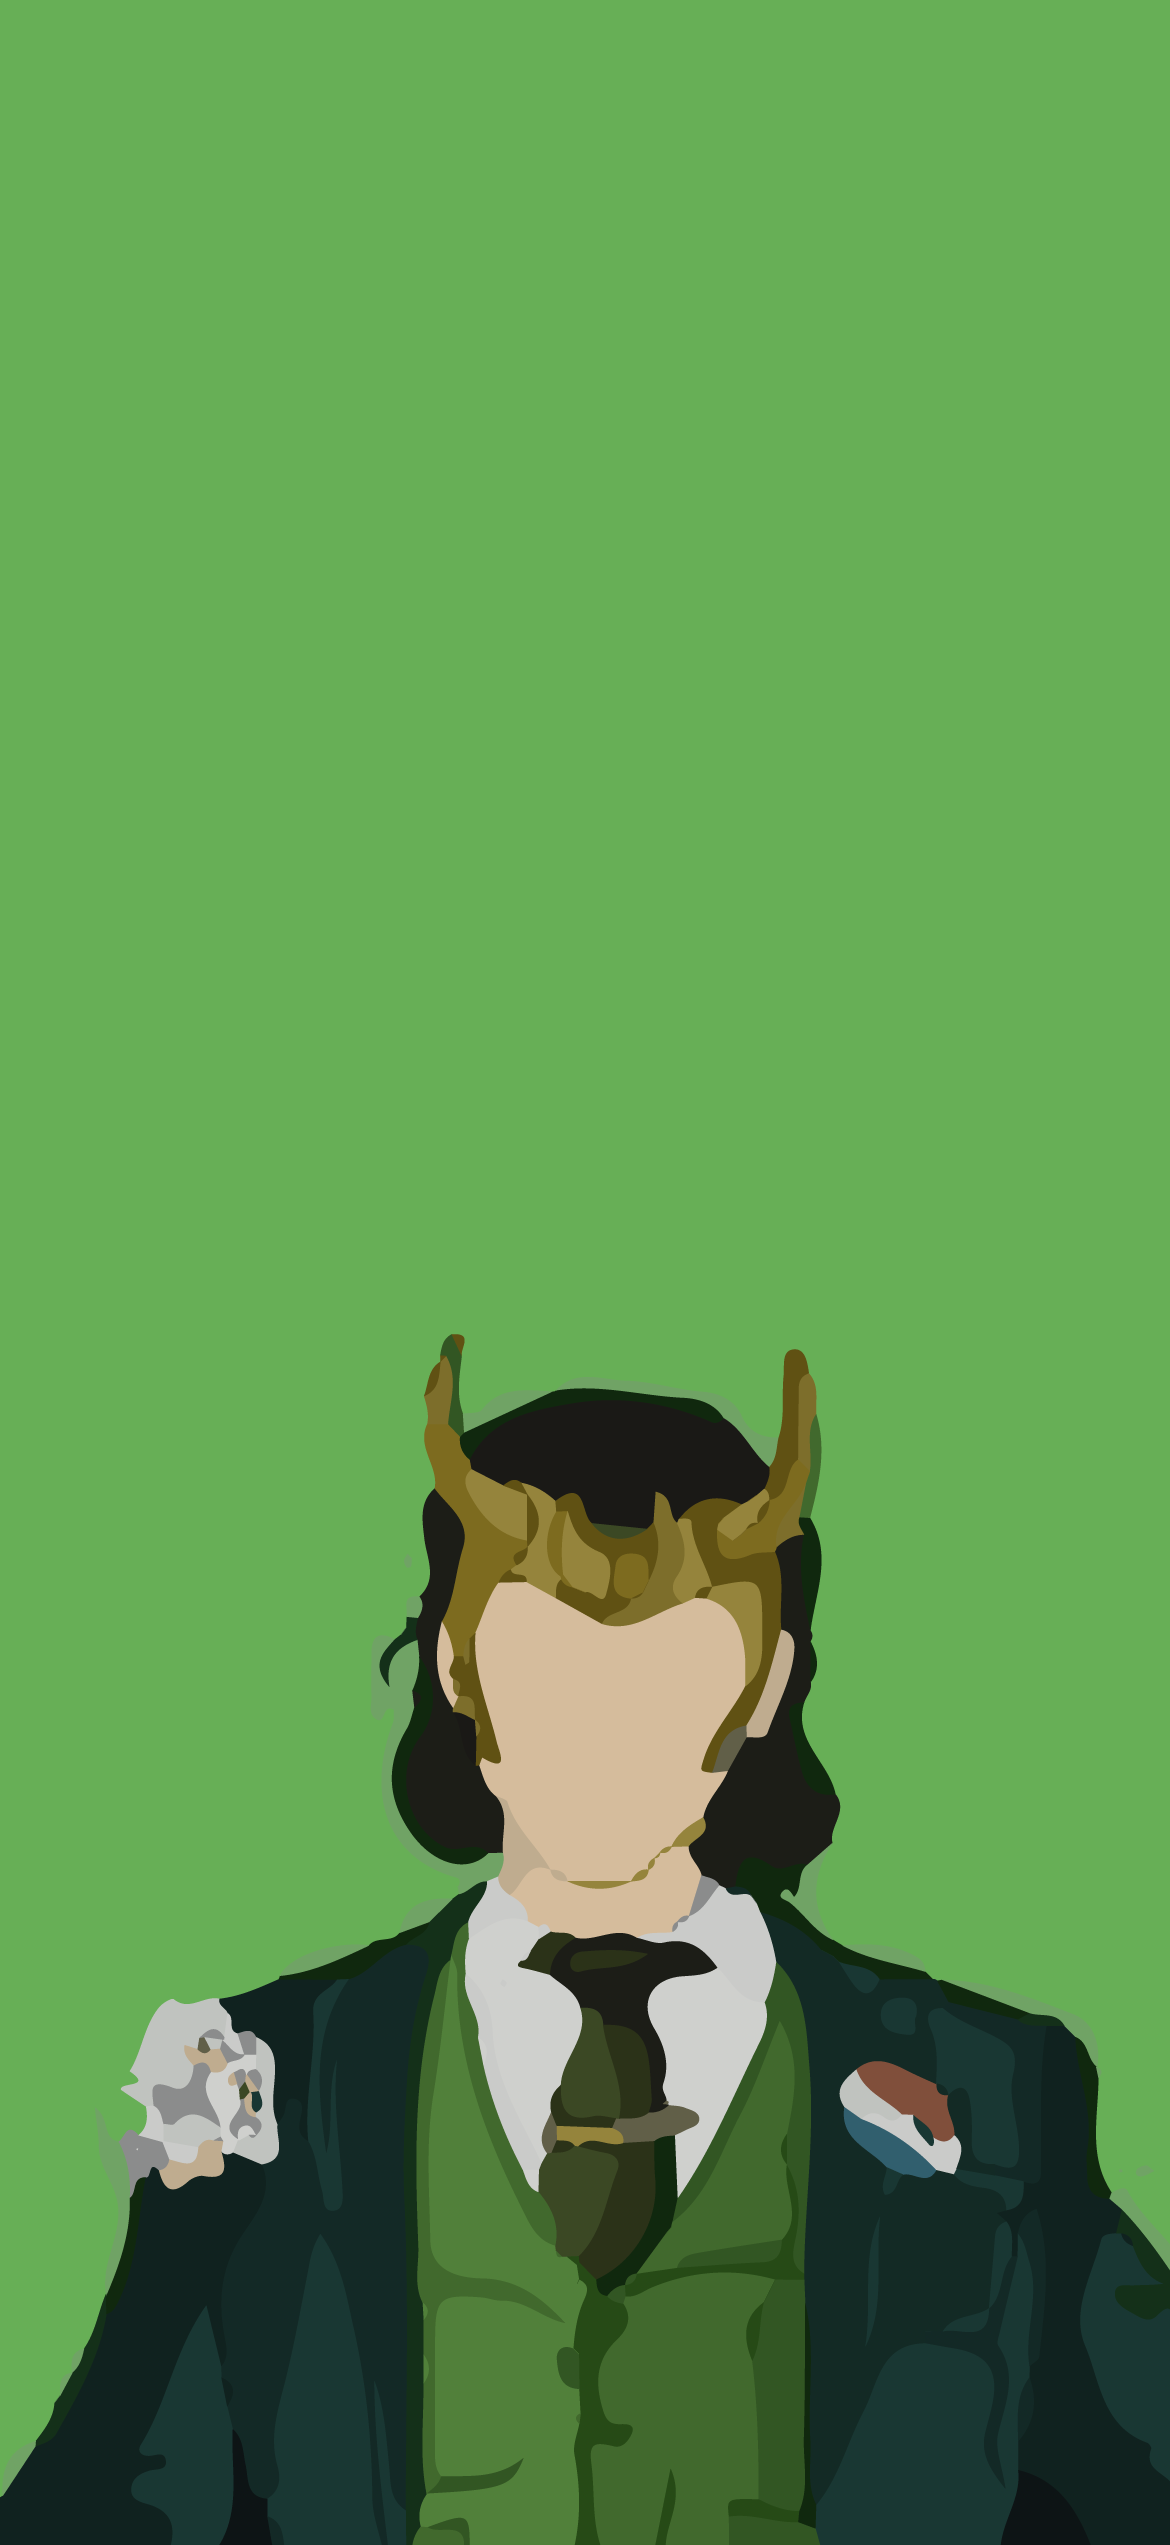 Anime Loki Wallpaper Free Anime Loki Background